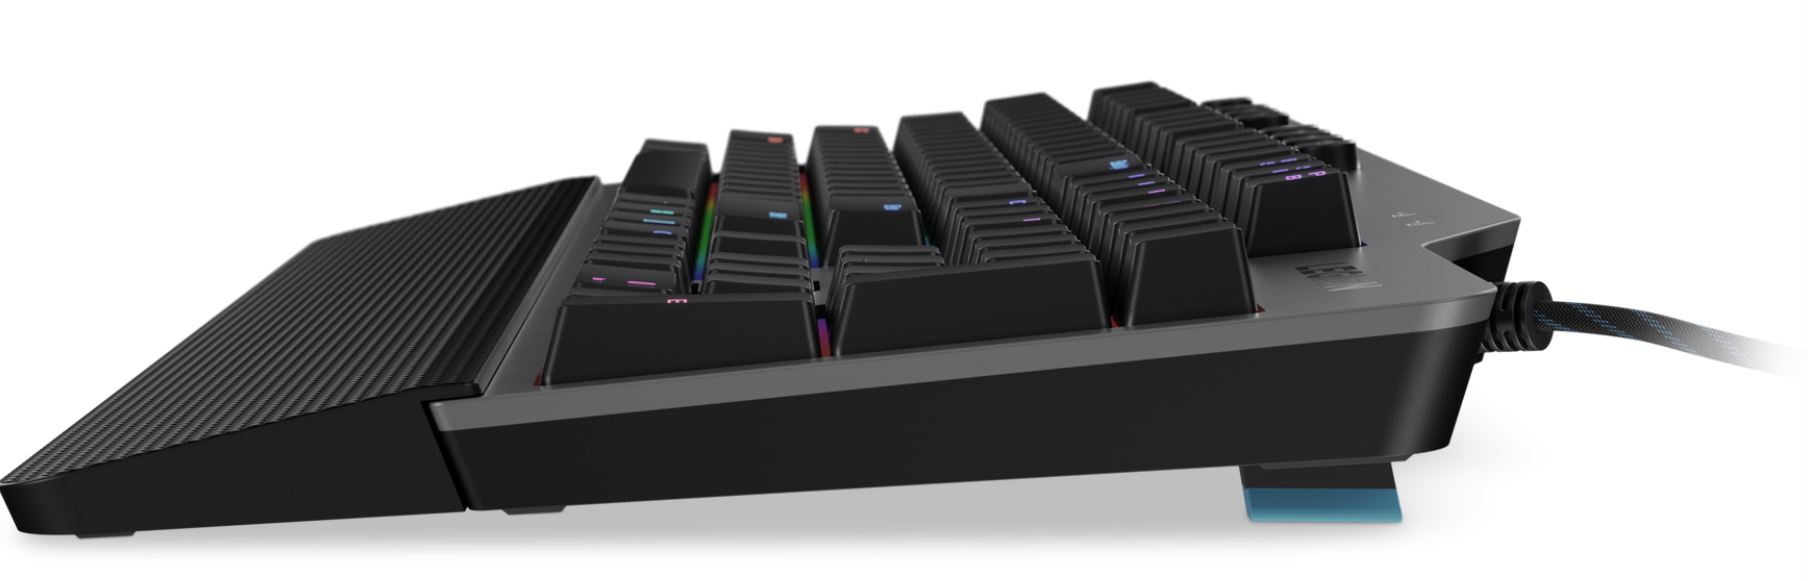 Lenovo Legion K500 RGB メカニカル・ゲーミング・キーボード - 製品の